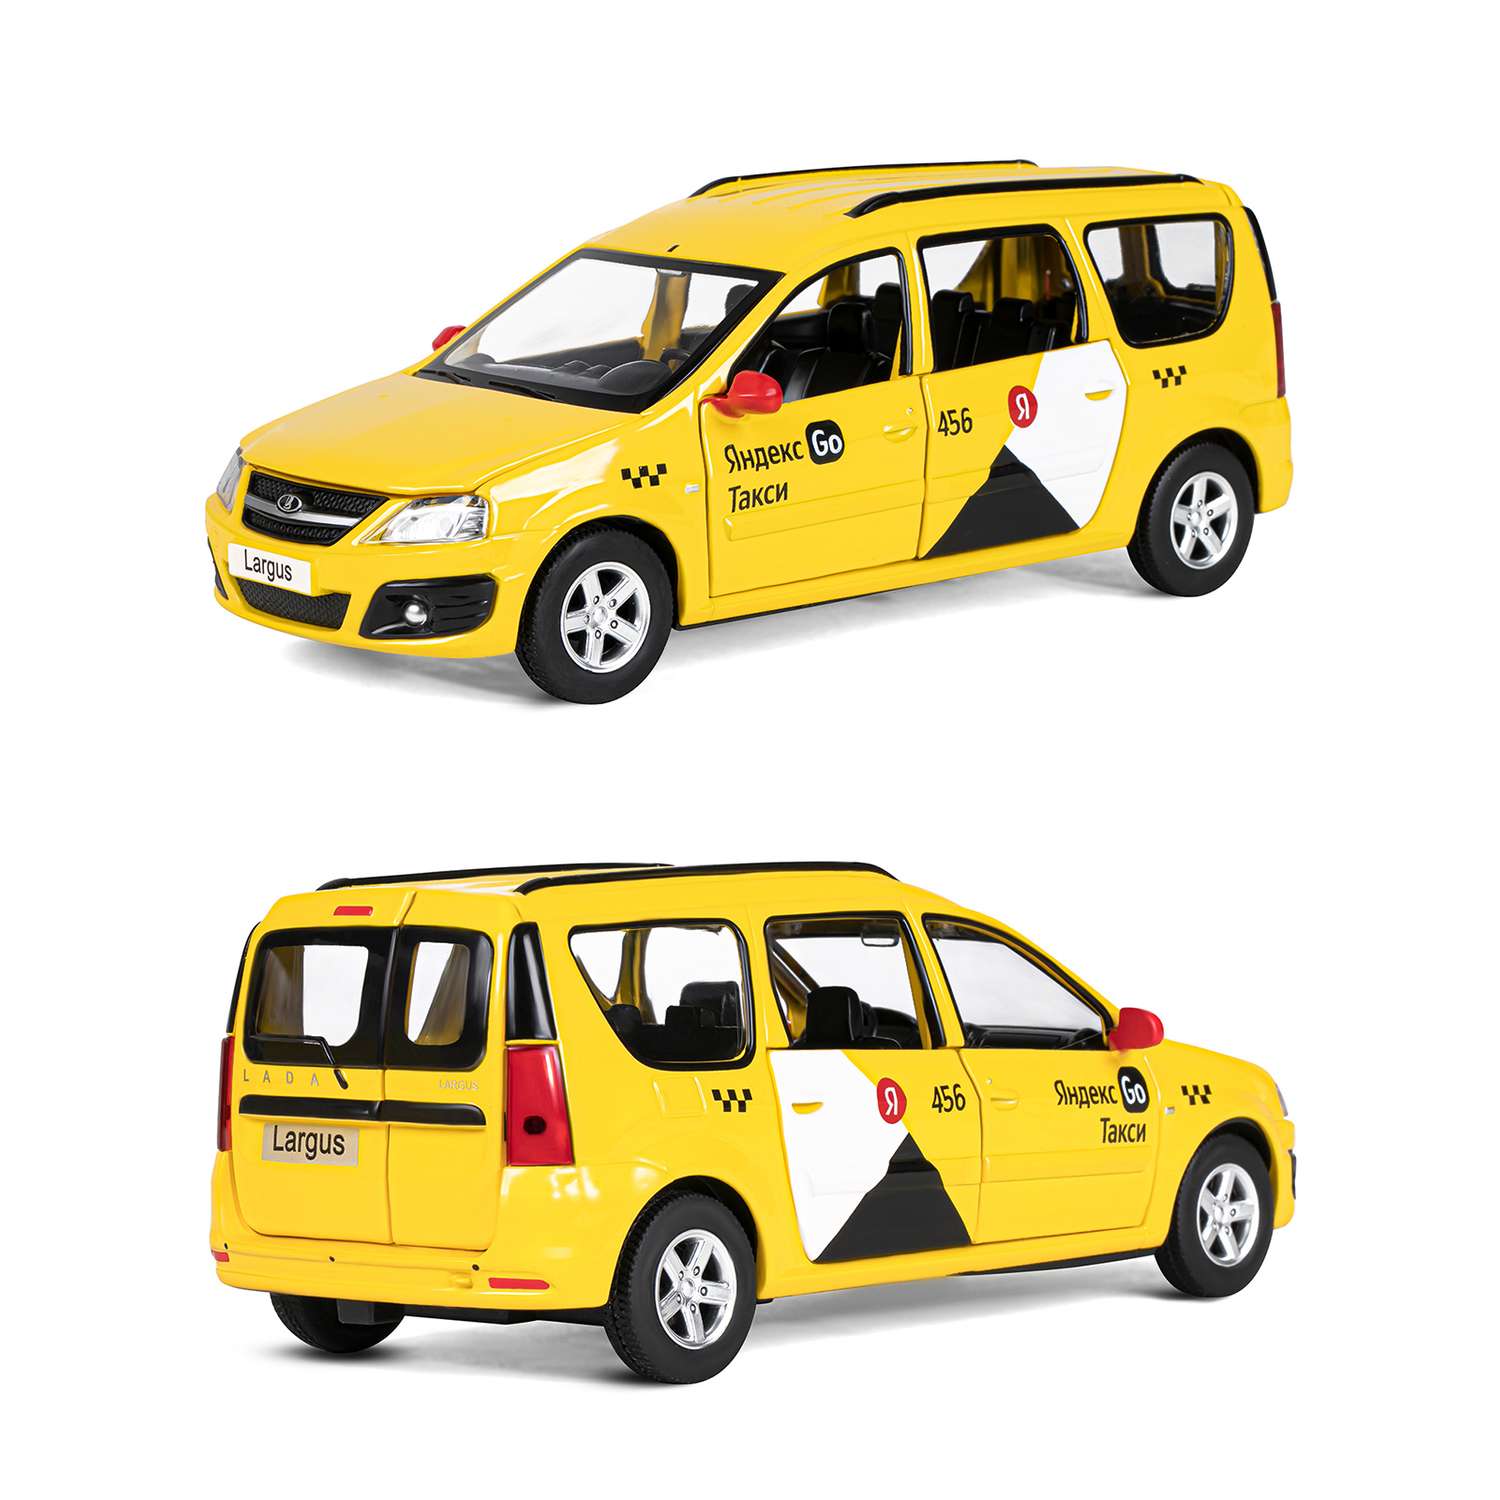 Машинка металлическая Яндекс GO игрушка детская LADA LARGUS 1:24 желтый Озвучено Алисой JB1251481 - фото 6